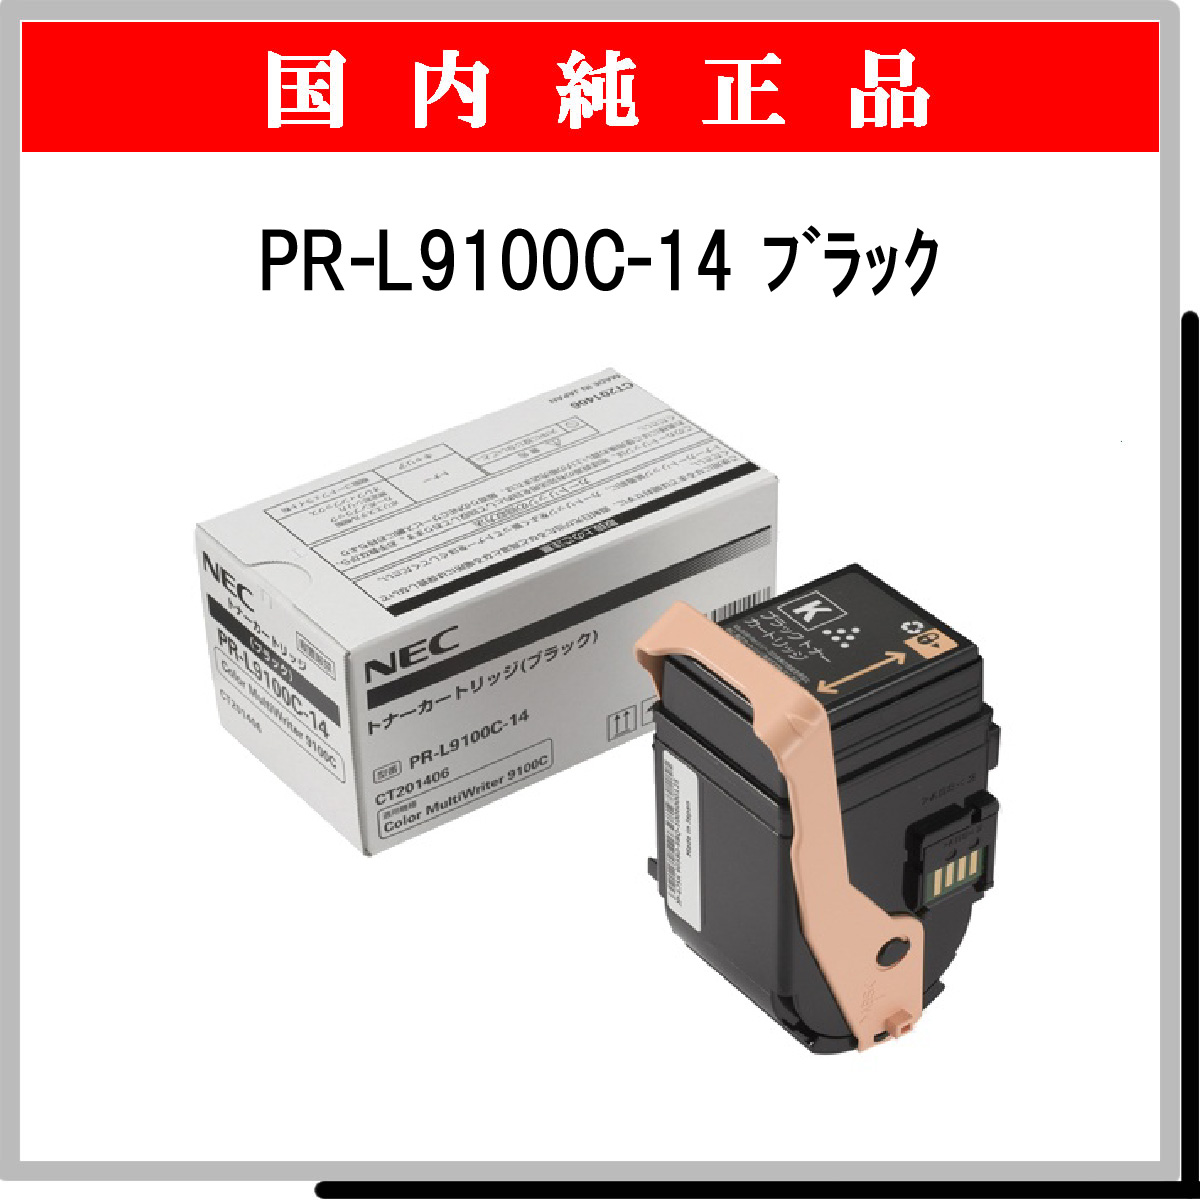 PR-L9100C-14 純正